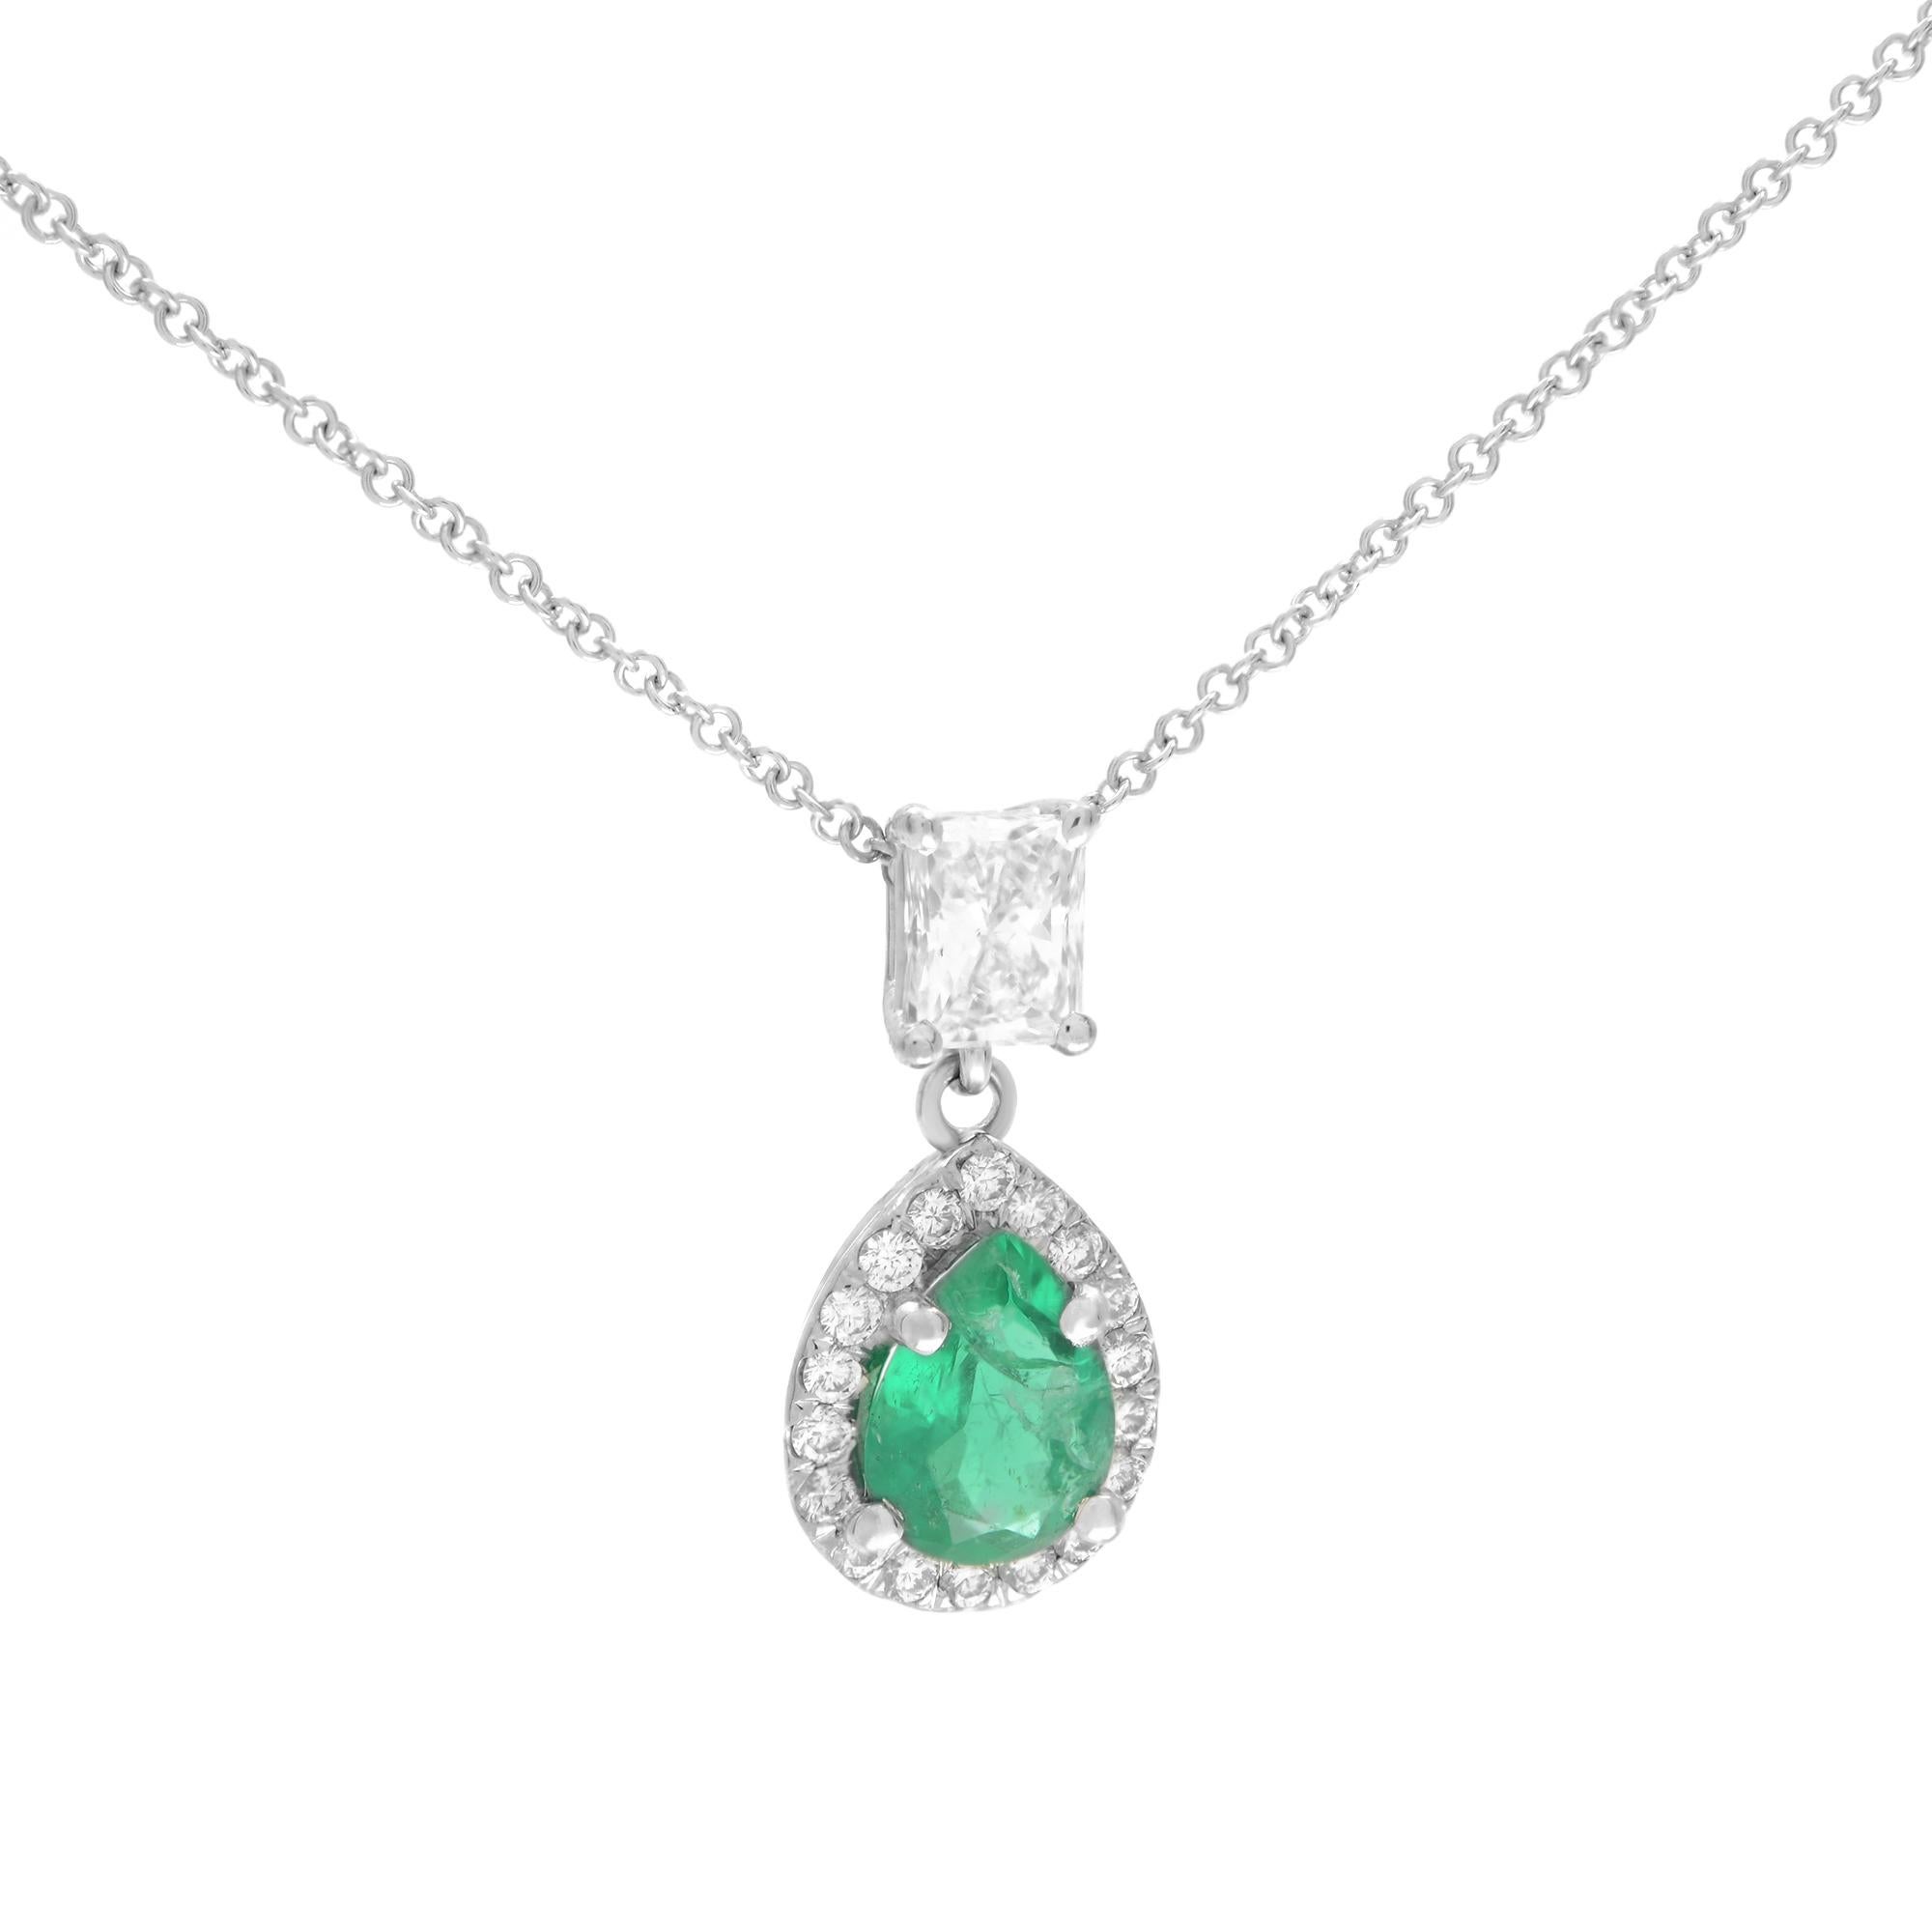 Ce pendentif classique présente une émeraude verte en forme de poire de 0,83 carat, entourée d'un halo de diamants, le tout serti dans une monture à griffes. Un brillant diamant radiant de 0,53 carat est posé sur la pierre précieuse d'un vert